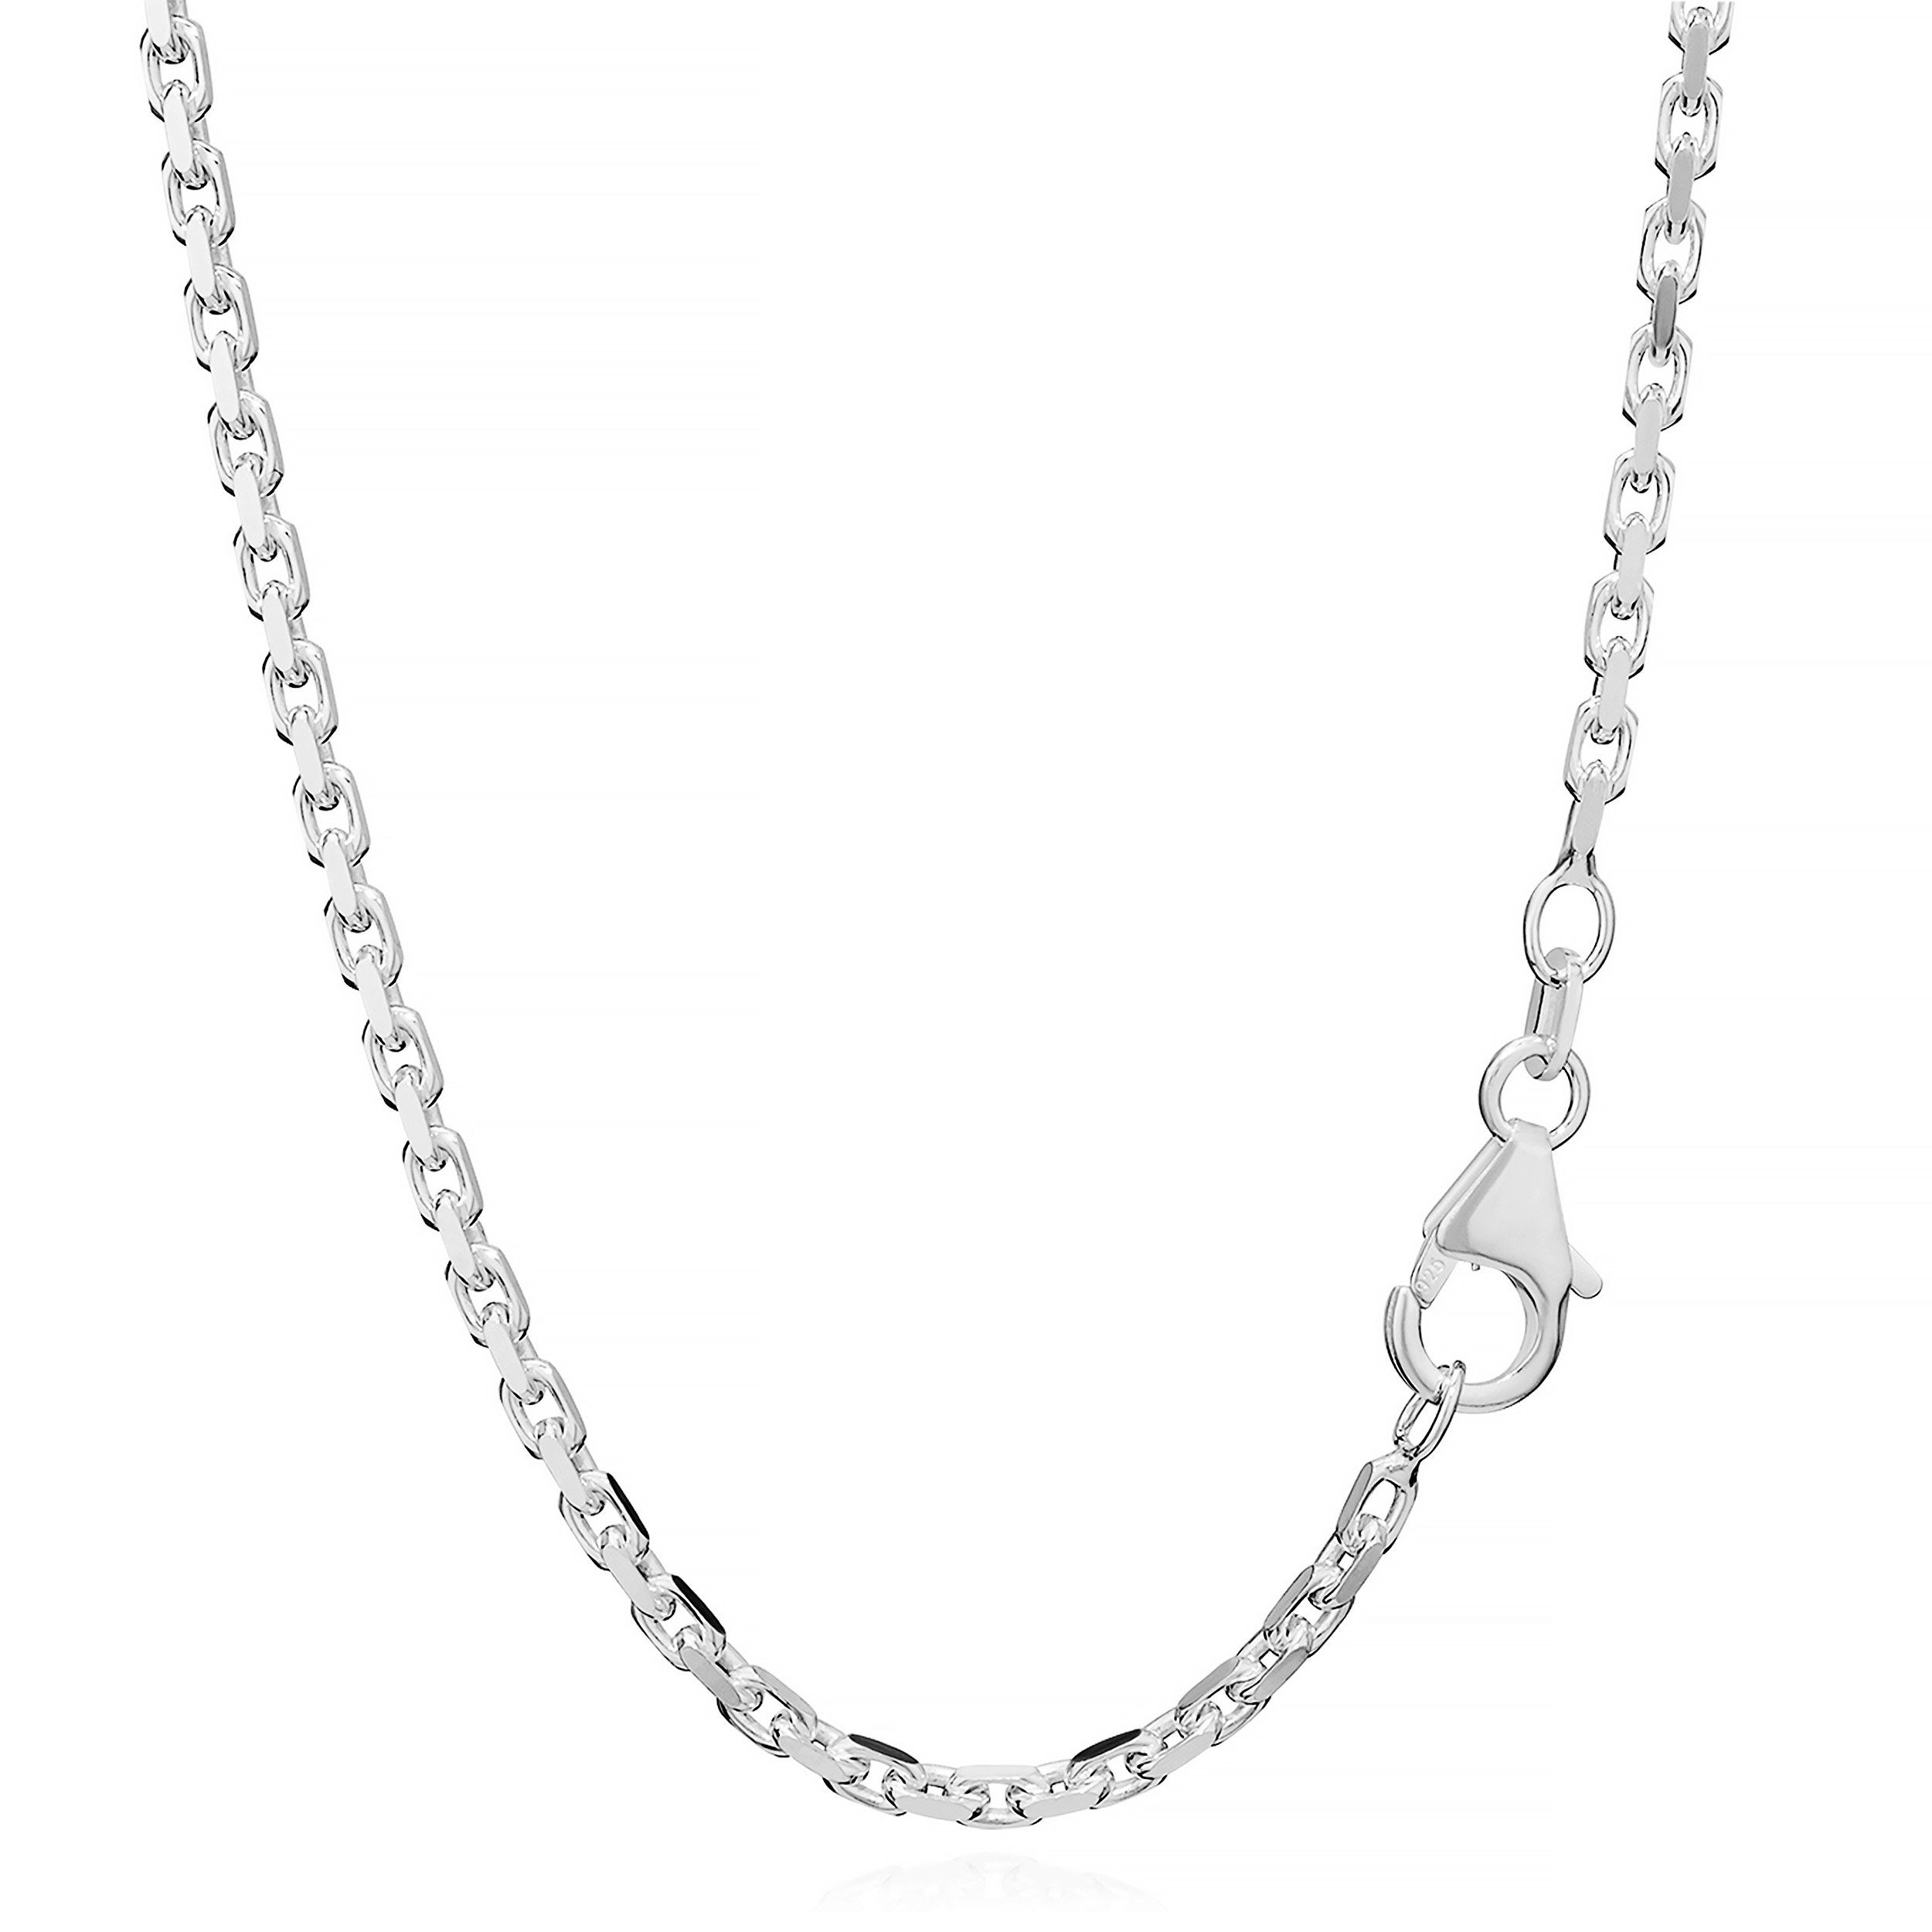 NKlaus Silberkette 42cm Massive Ankerkette 925er Sterlingsilber Kette, Diamantiert | Silberketten